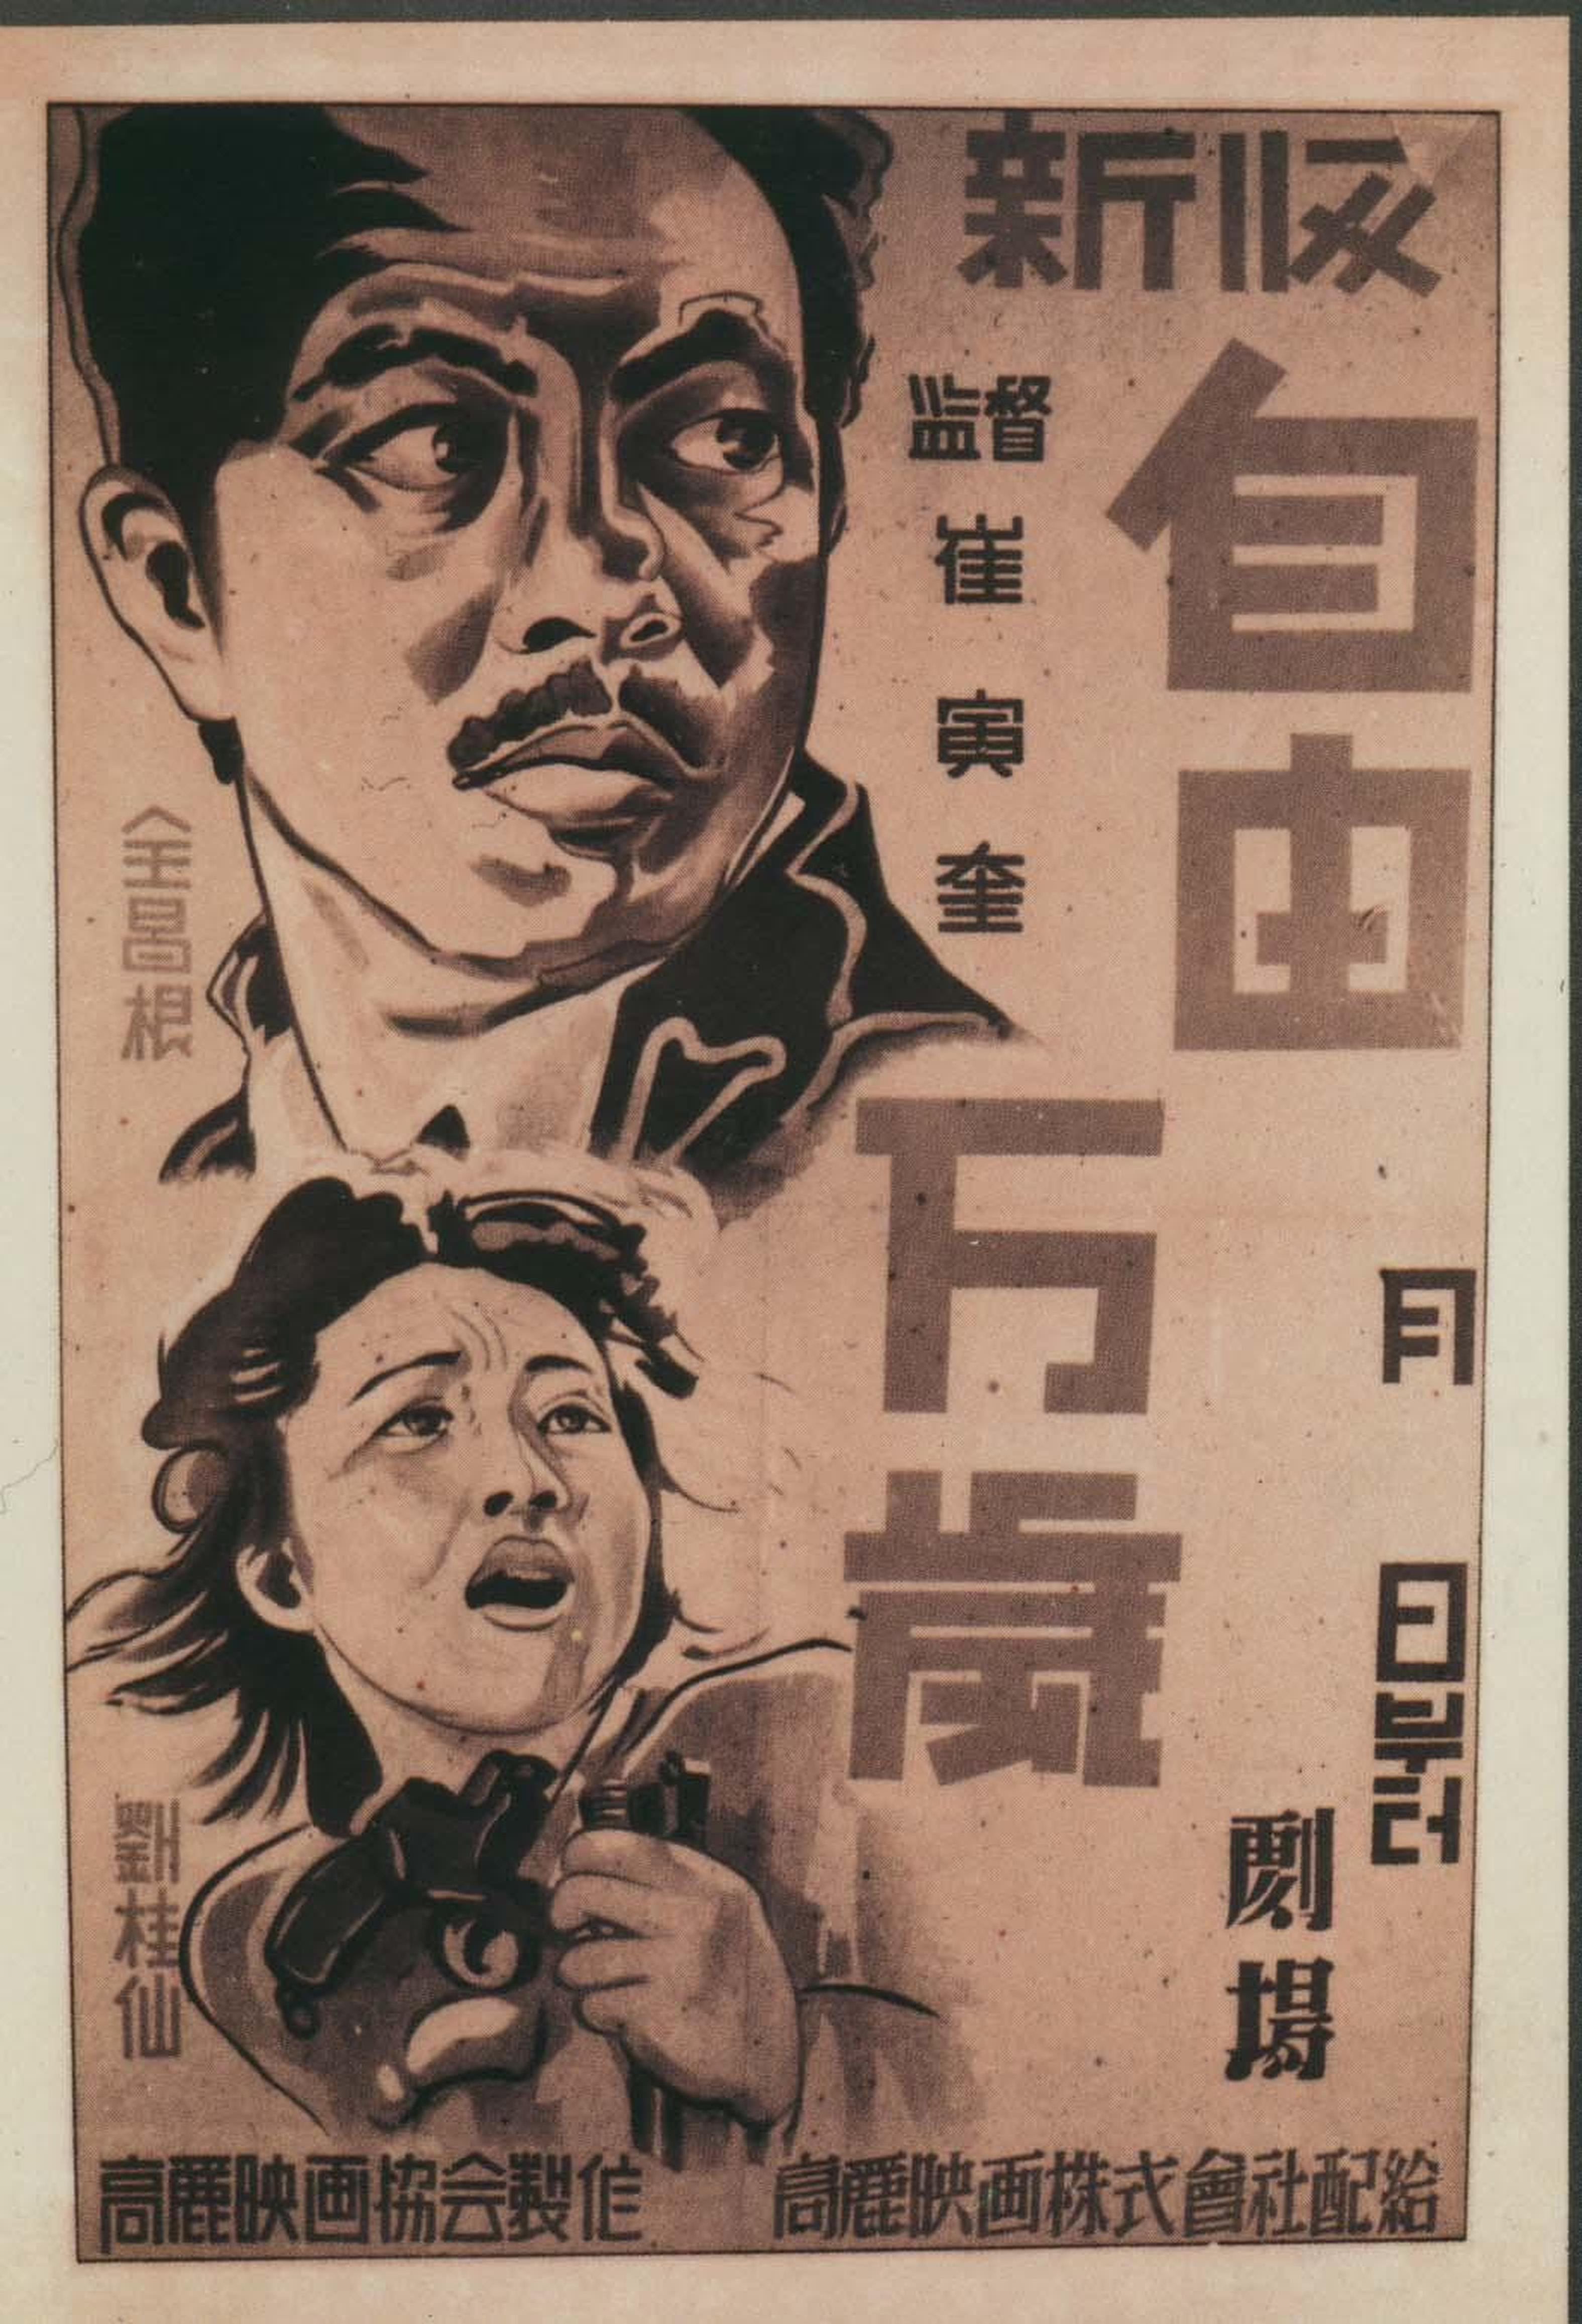 【1930-1950】《自由万岁》（1946）导演崔寅奎。高丽映画协会制作，朝鲜光复后拍摄的第一部电影，全长80分钟但仅存51分钟残本。